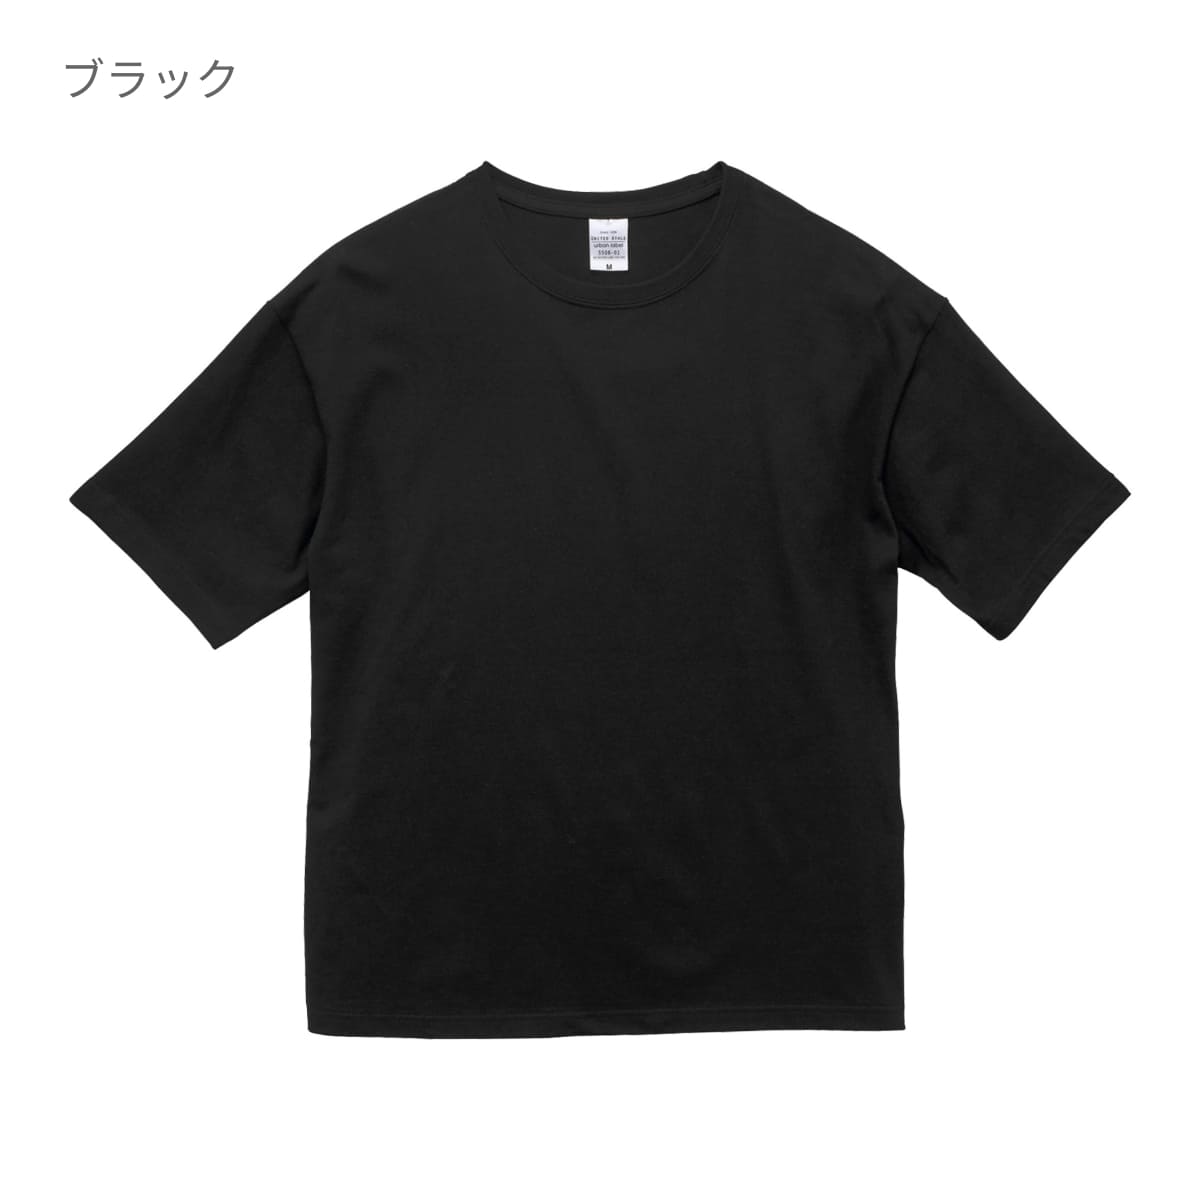 5.6オンス ビッグシルエット Tシャツ | ビッグサイズ | 1枚 | 5508-01 | ブラック